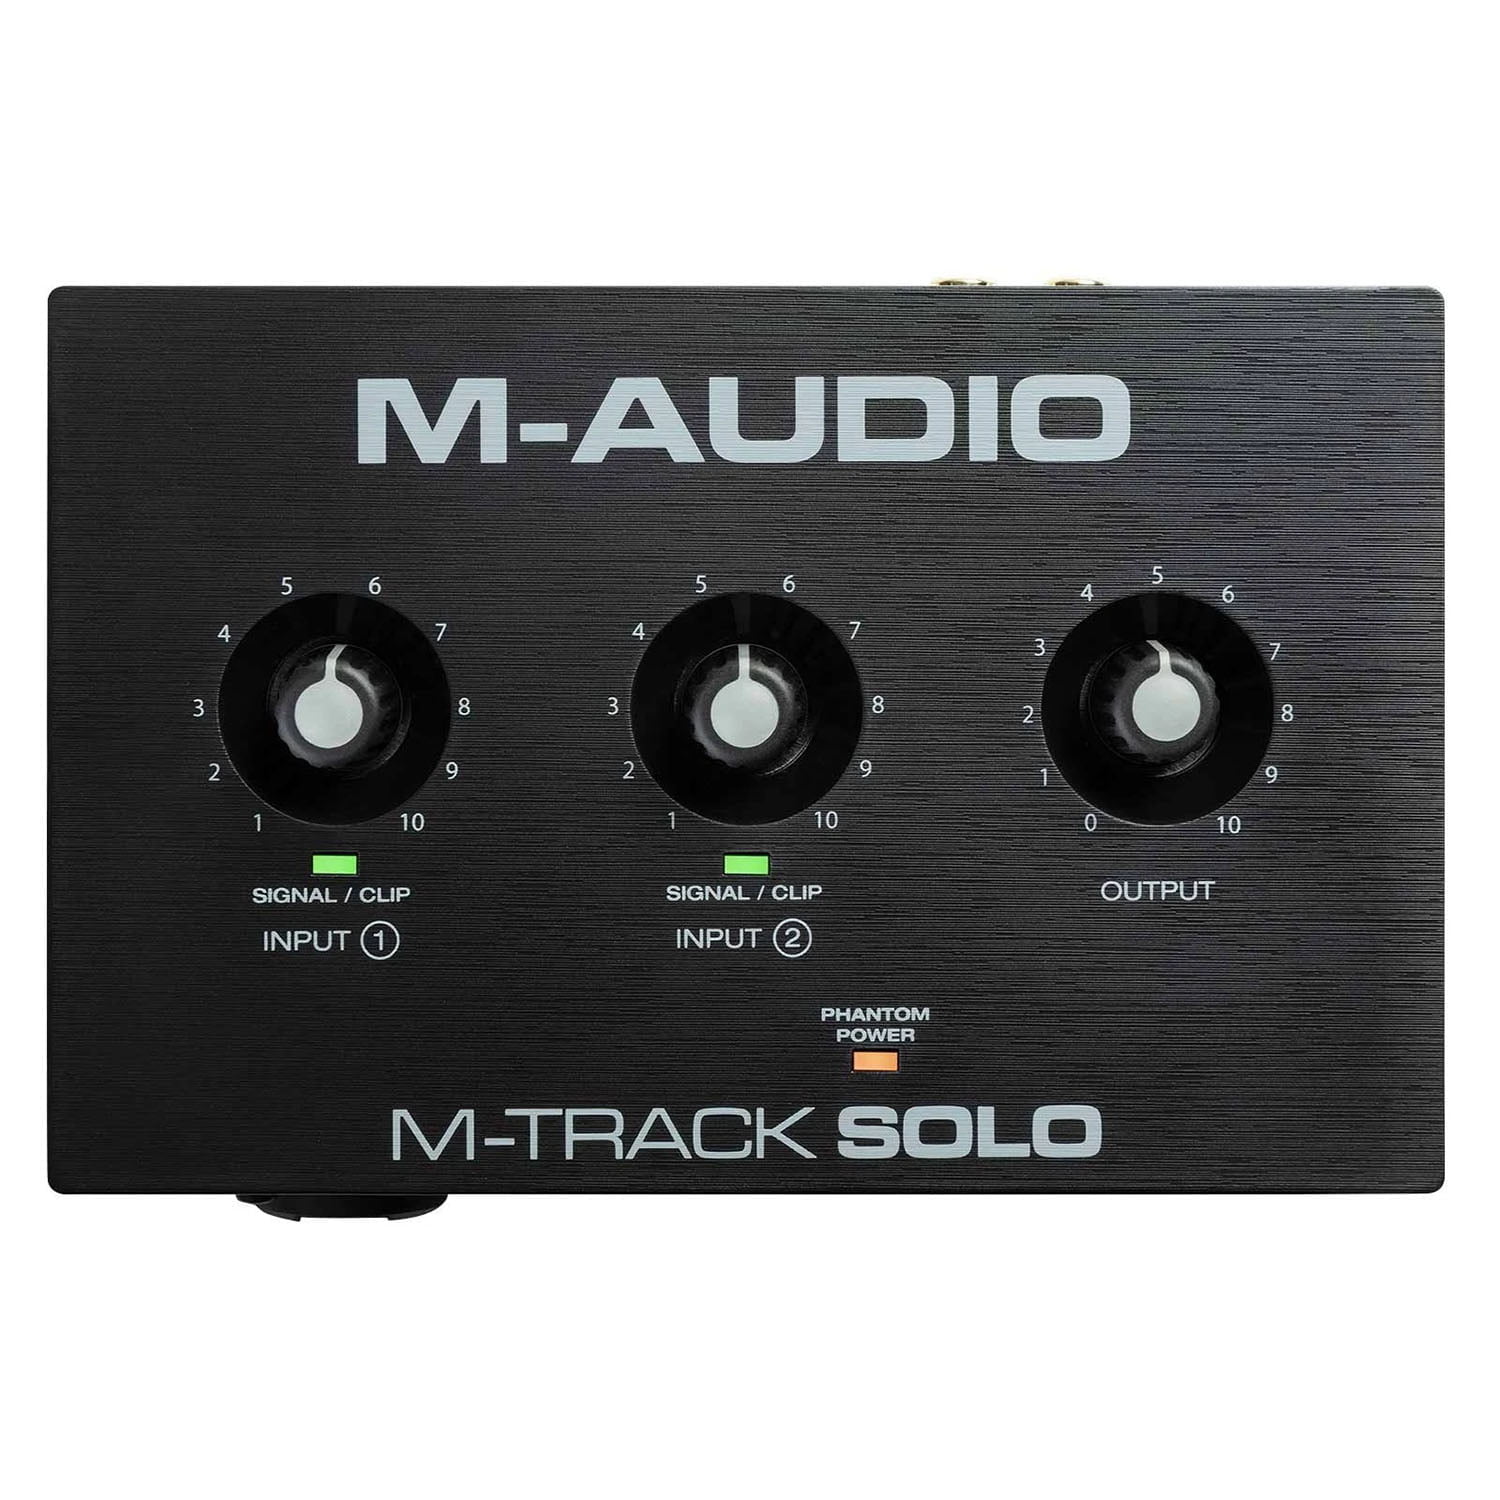 M-Audio M-Track Solo top